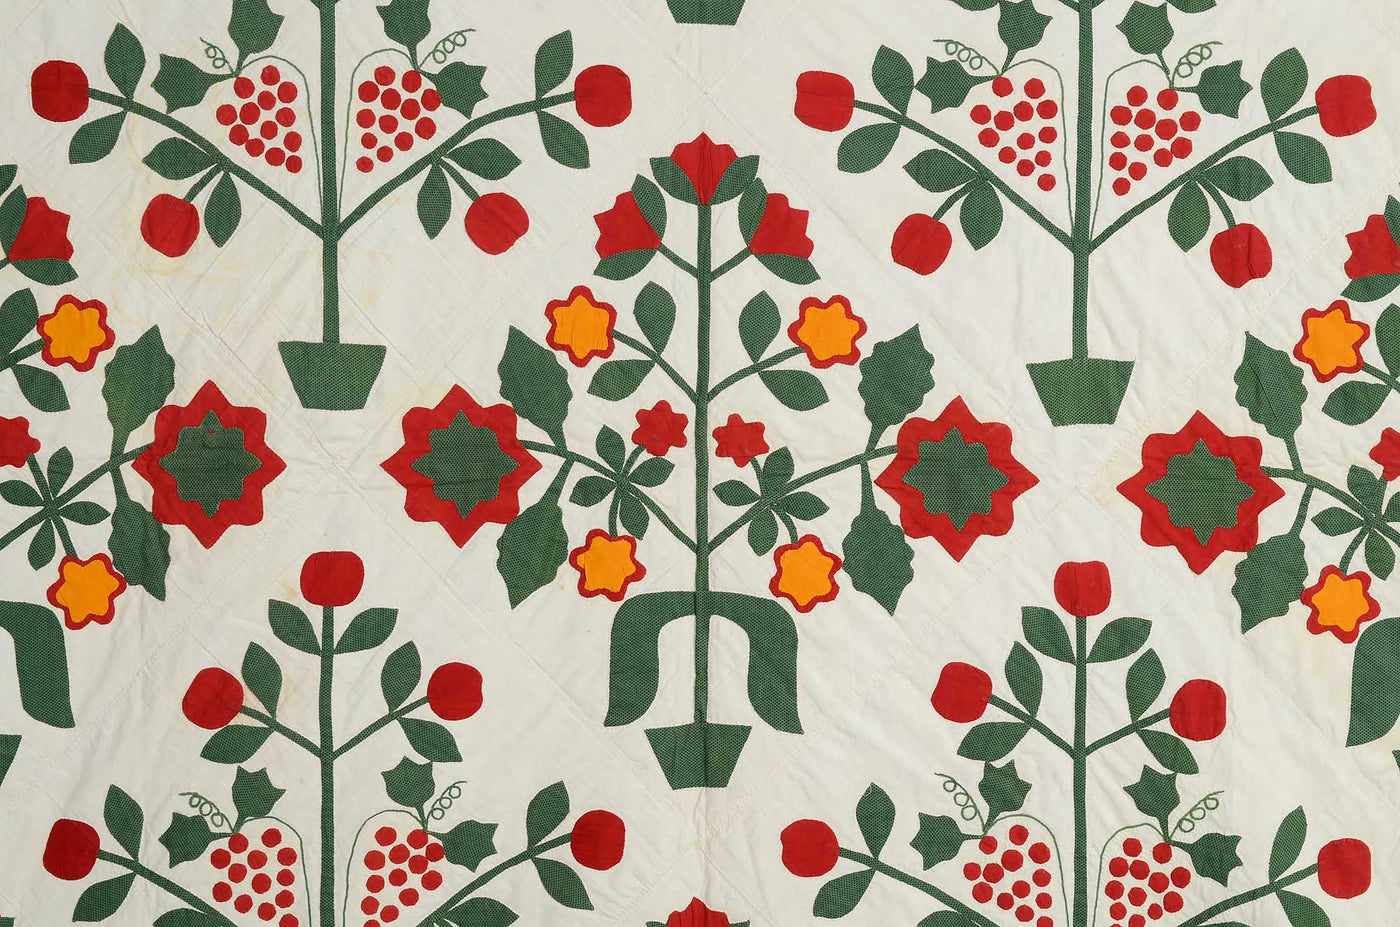 pots-of-flowers-applique-quilt-1446052-detail-2